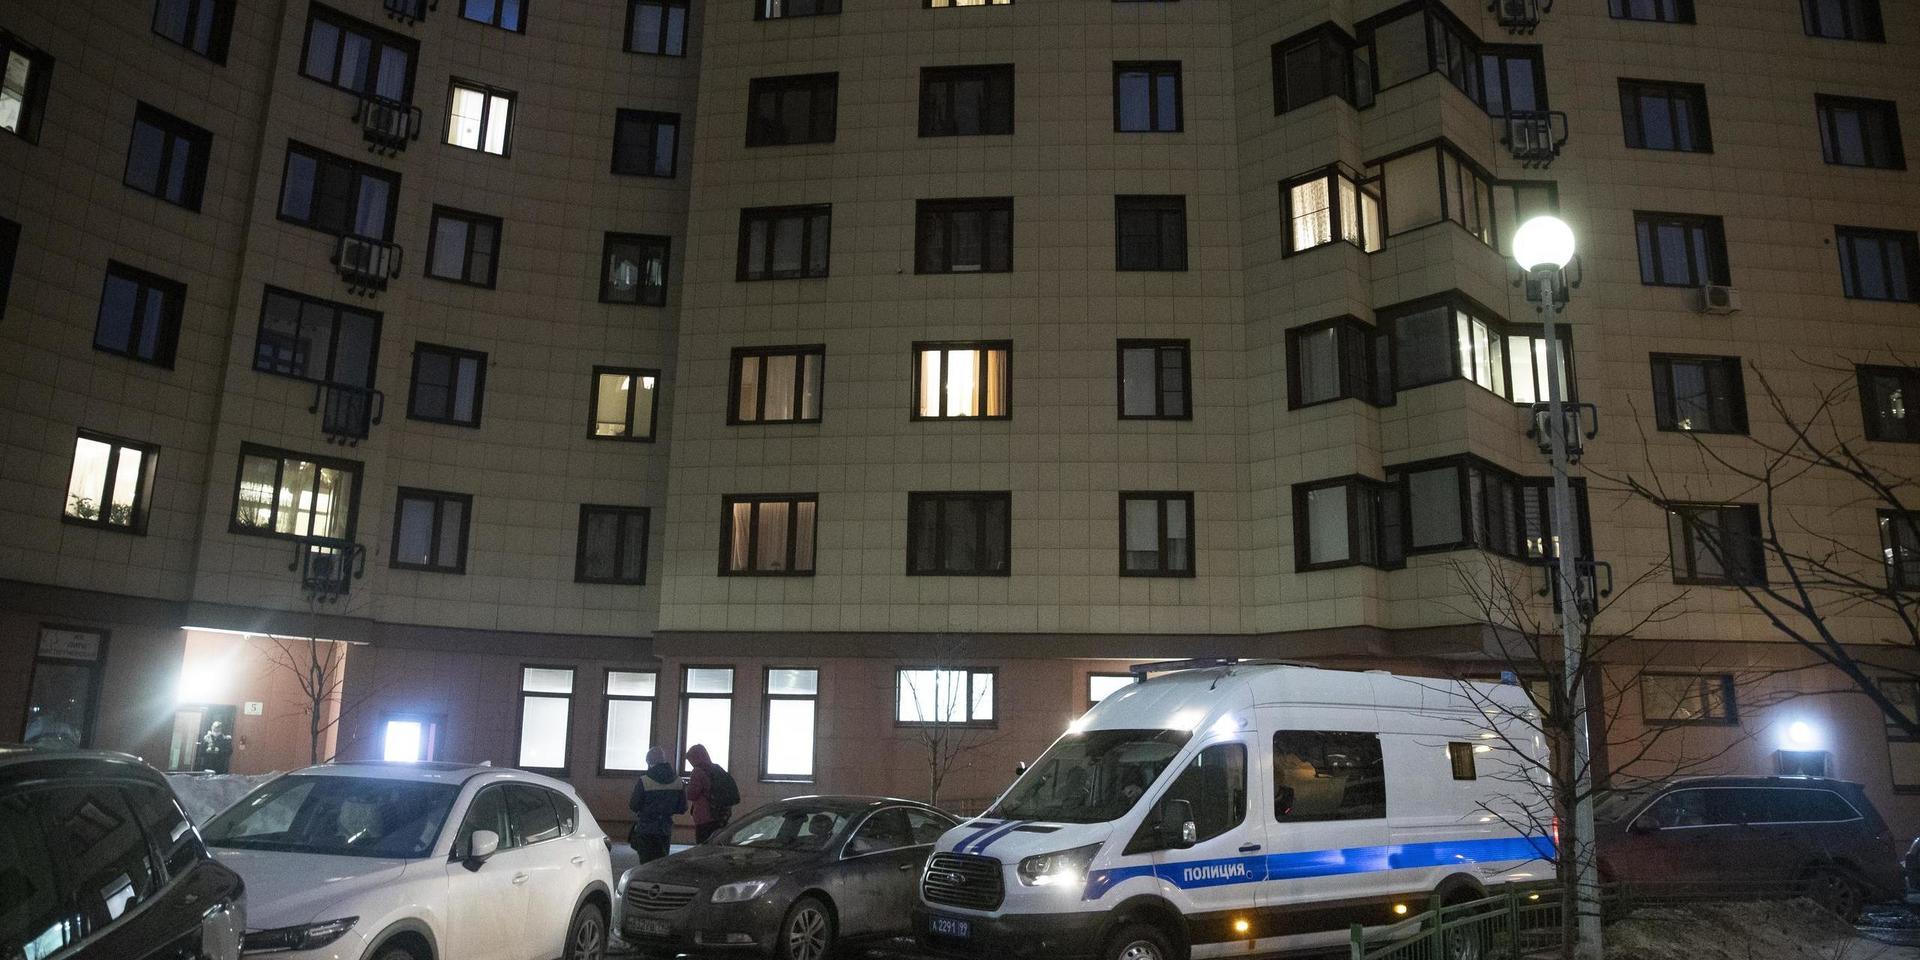 Ett polisfordon utanför det hus där den ryske oppositionsledaren Aleksej Navalnyjs bostad på onsdagen.